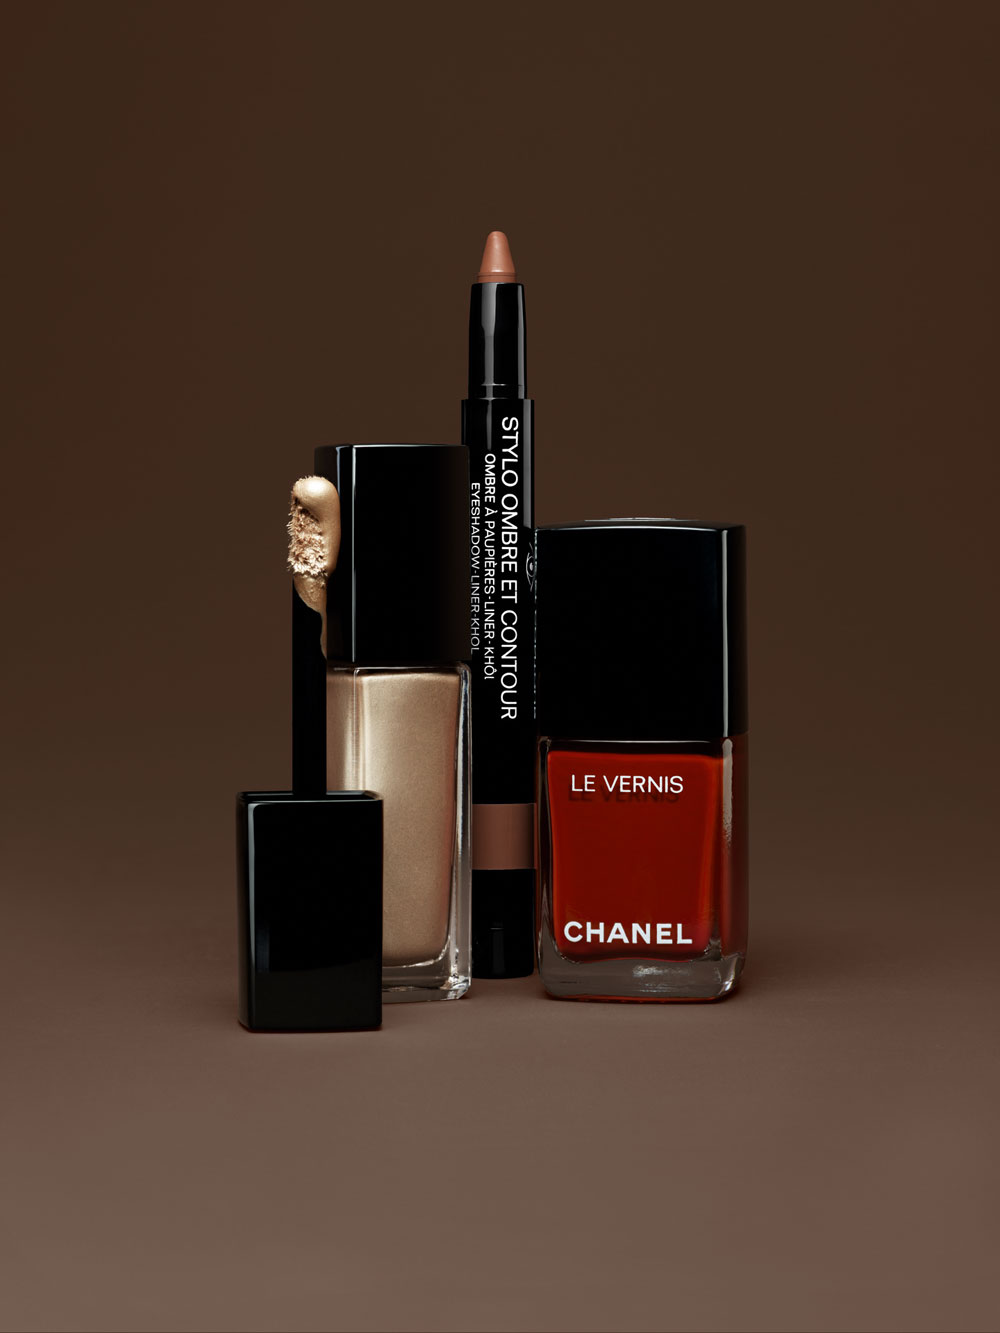 Chanel präsentiert mit Ton-sur-Ton eine stimmige Makeup-Kollektion, mit der automatisch Vorfreude auf den Herbst aufkommt. 